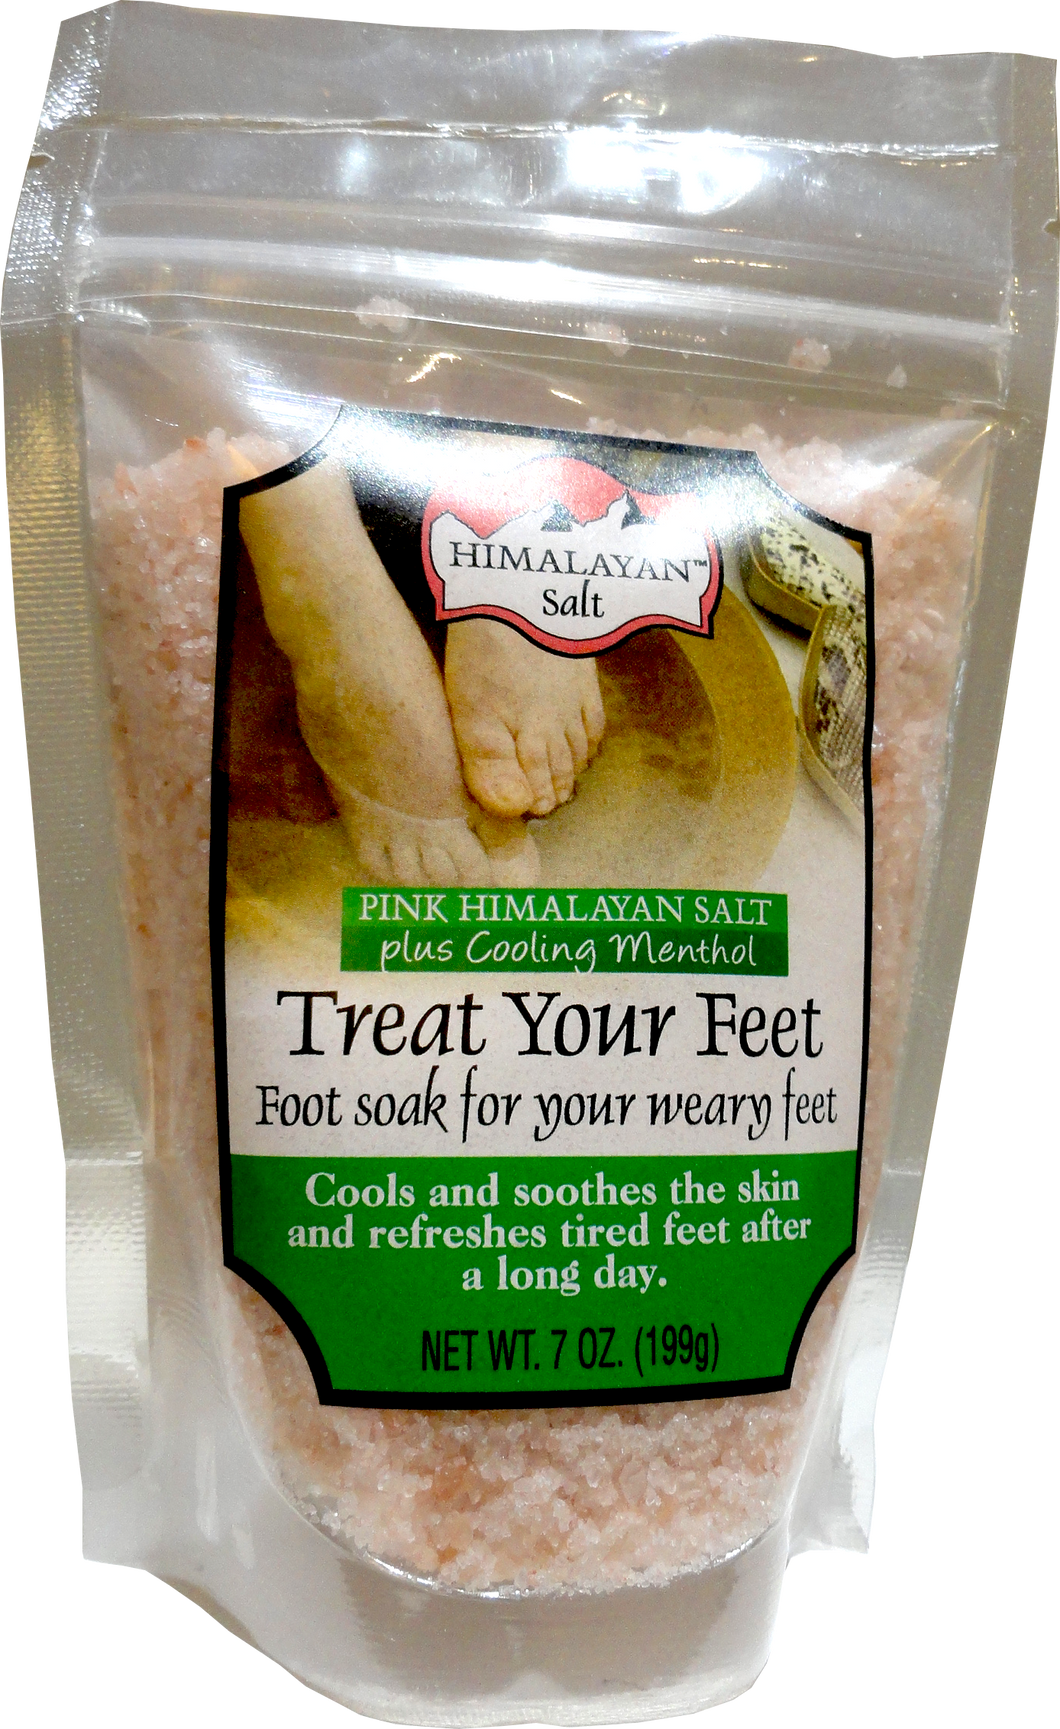 Himalayan Salt Treat your feet plus cooling Menthol